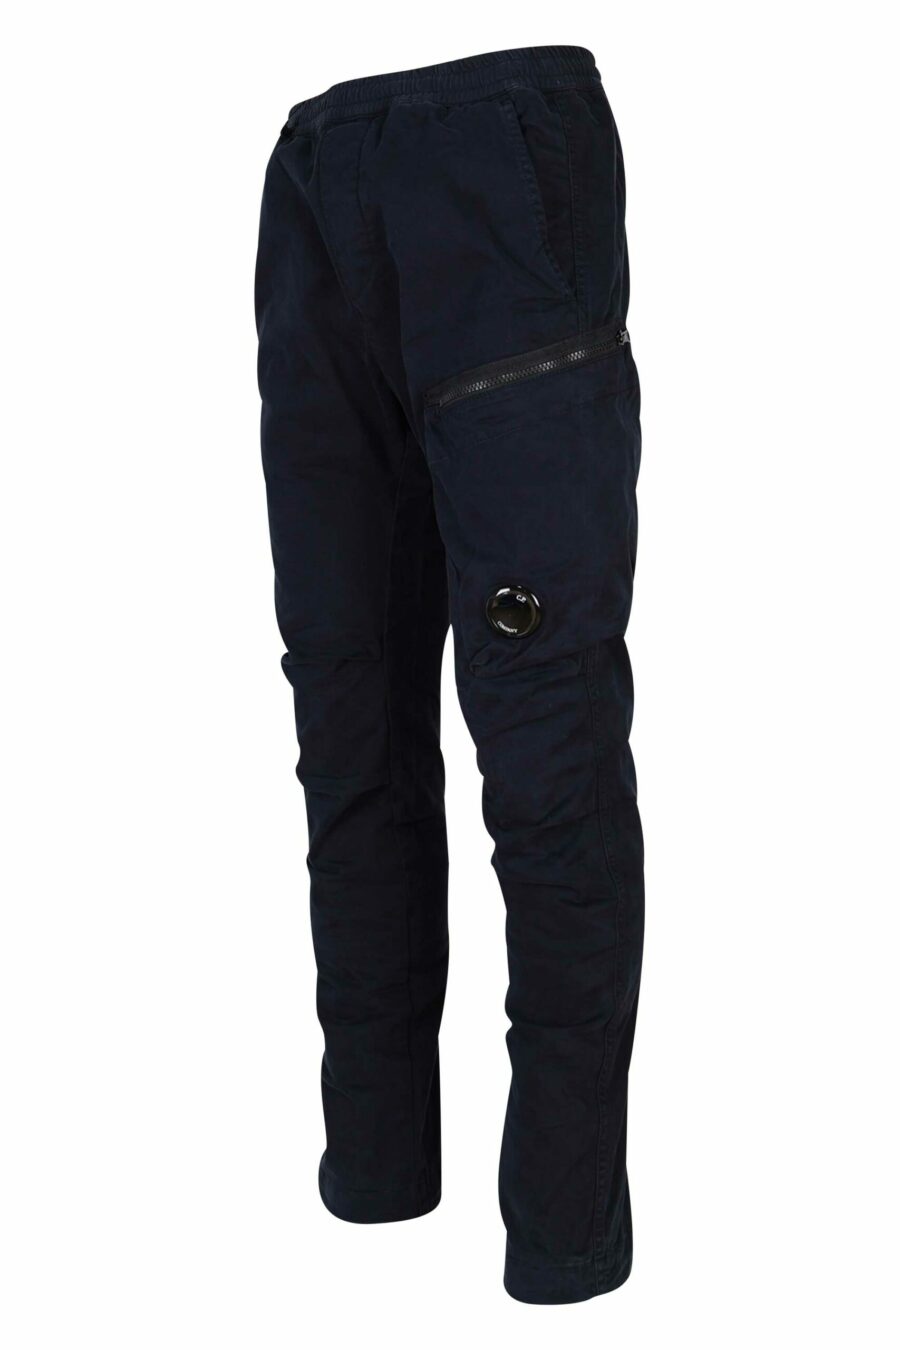 Pantalon en satin stretch bleu foncé avec poche latérale et lentille logo - 7620943578485 1 1 à l'échelle